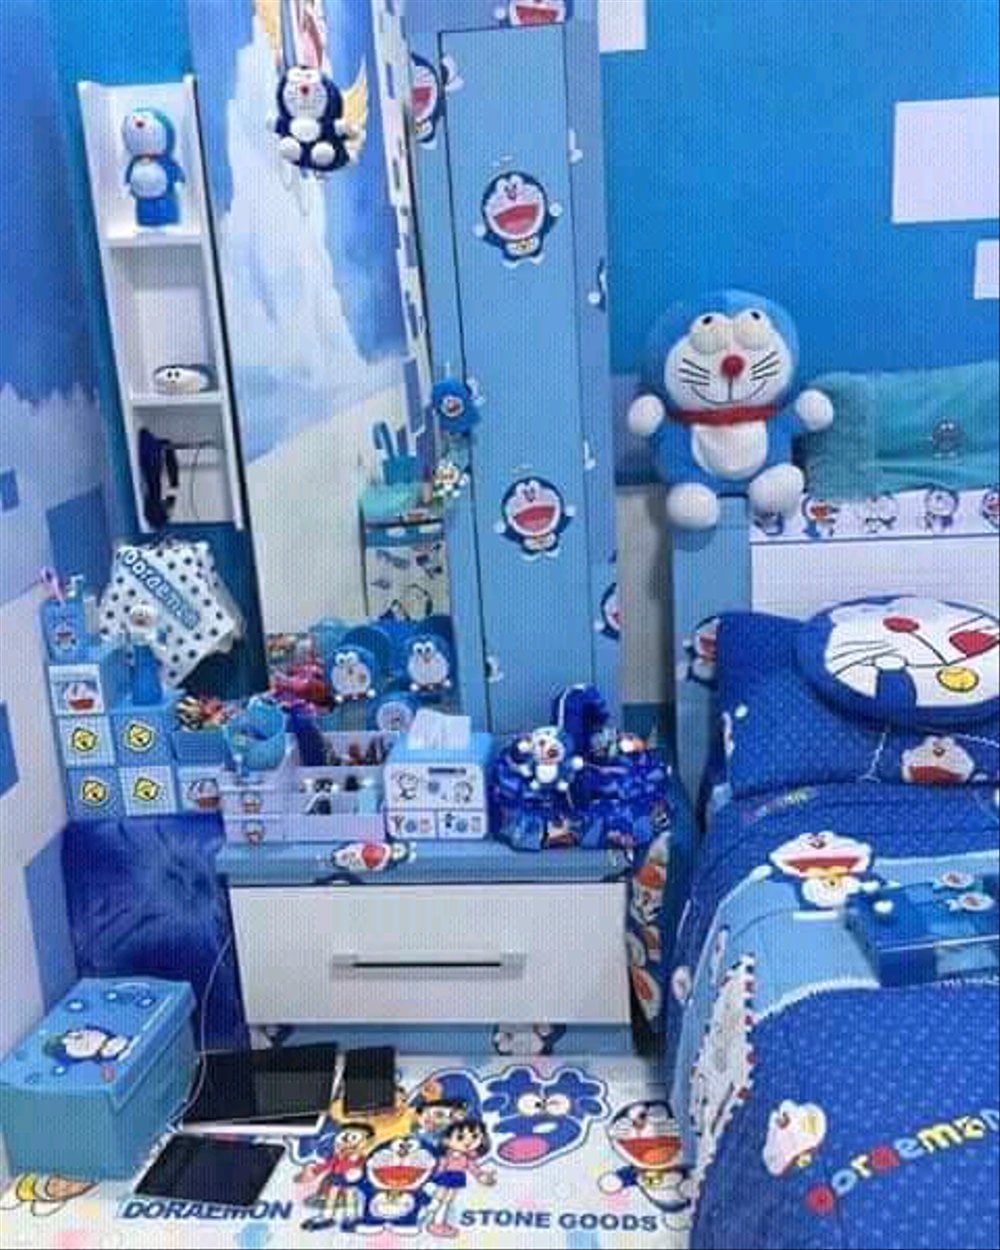 86 Populer Dekorasi Kamar Doraemon Paling Terkenal